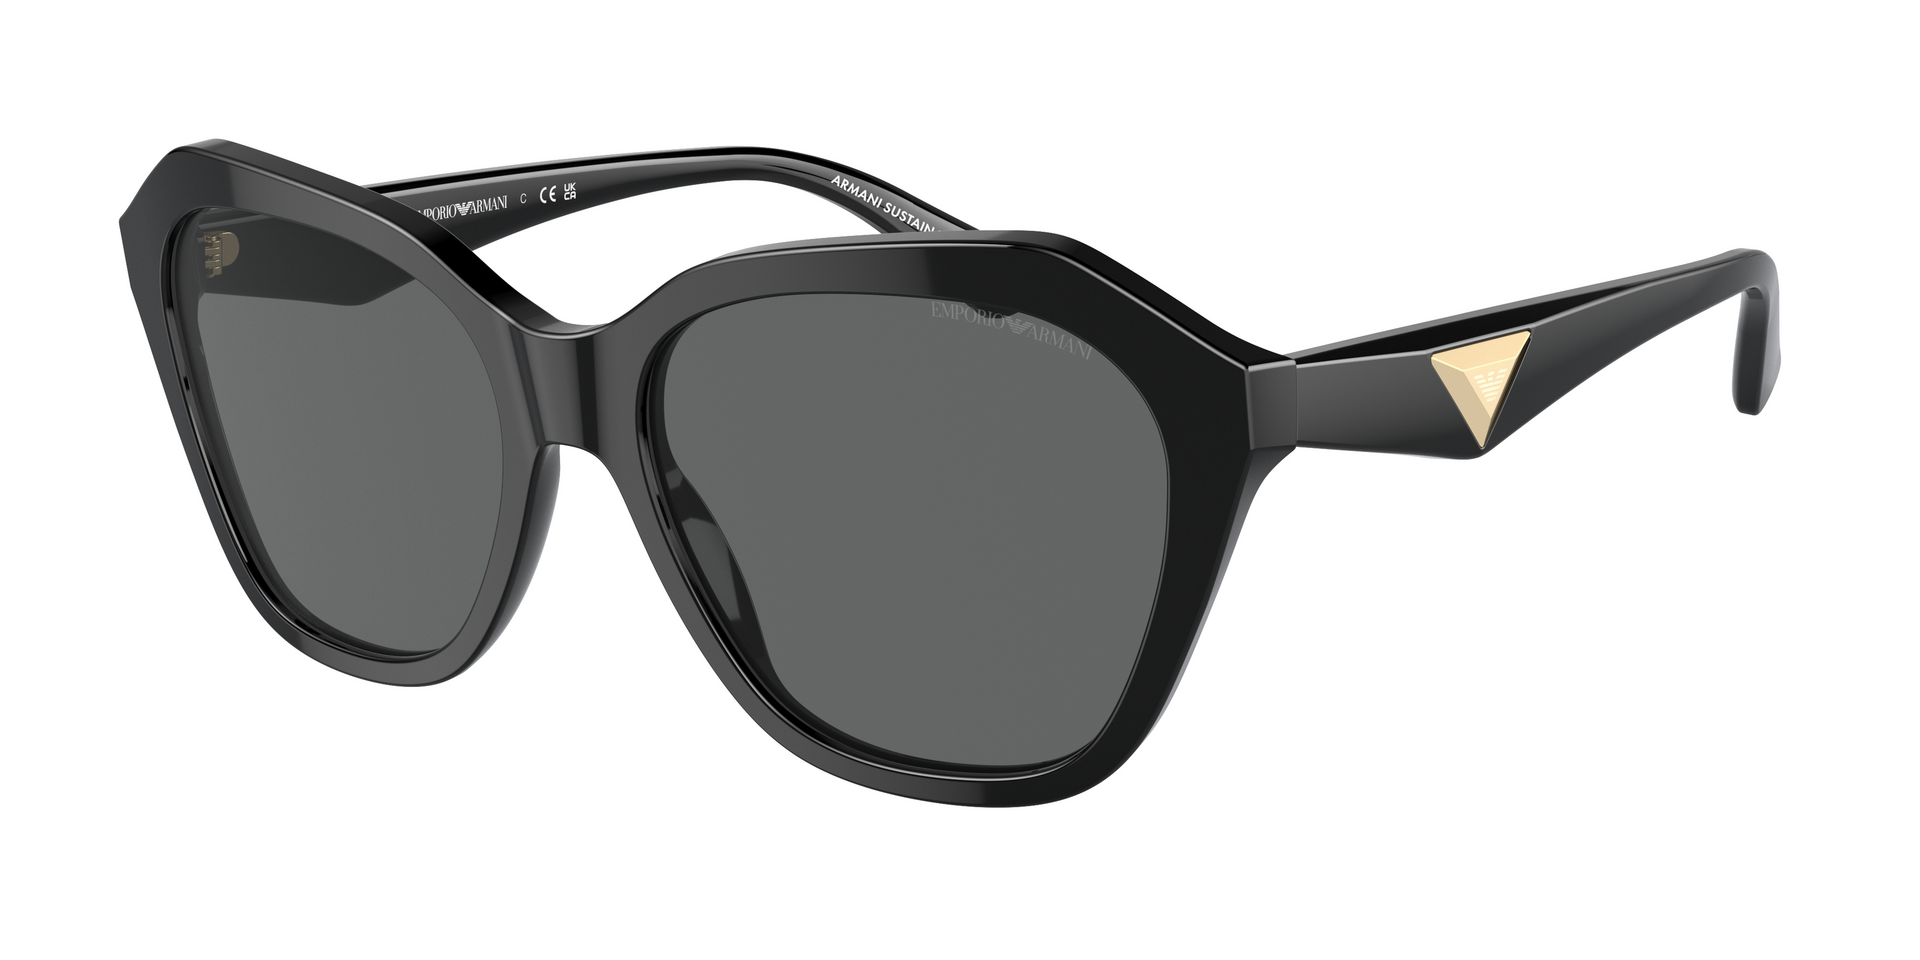 Das Bild zeigt die Sonnenbrille EA4221 501787 von der Marke Emporio Armani in schwarz.